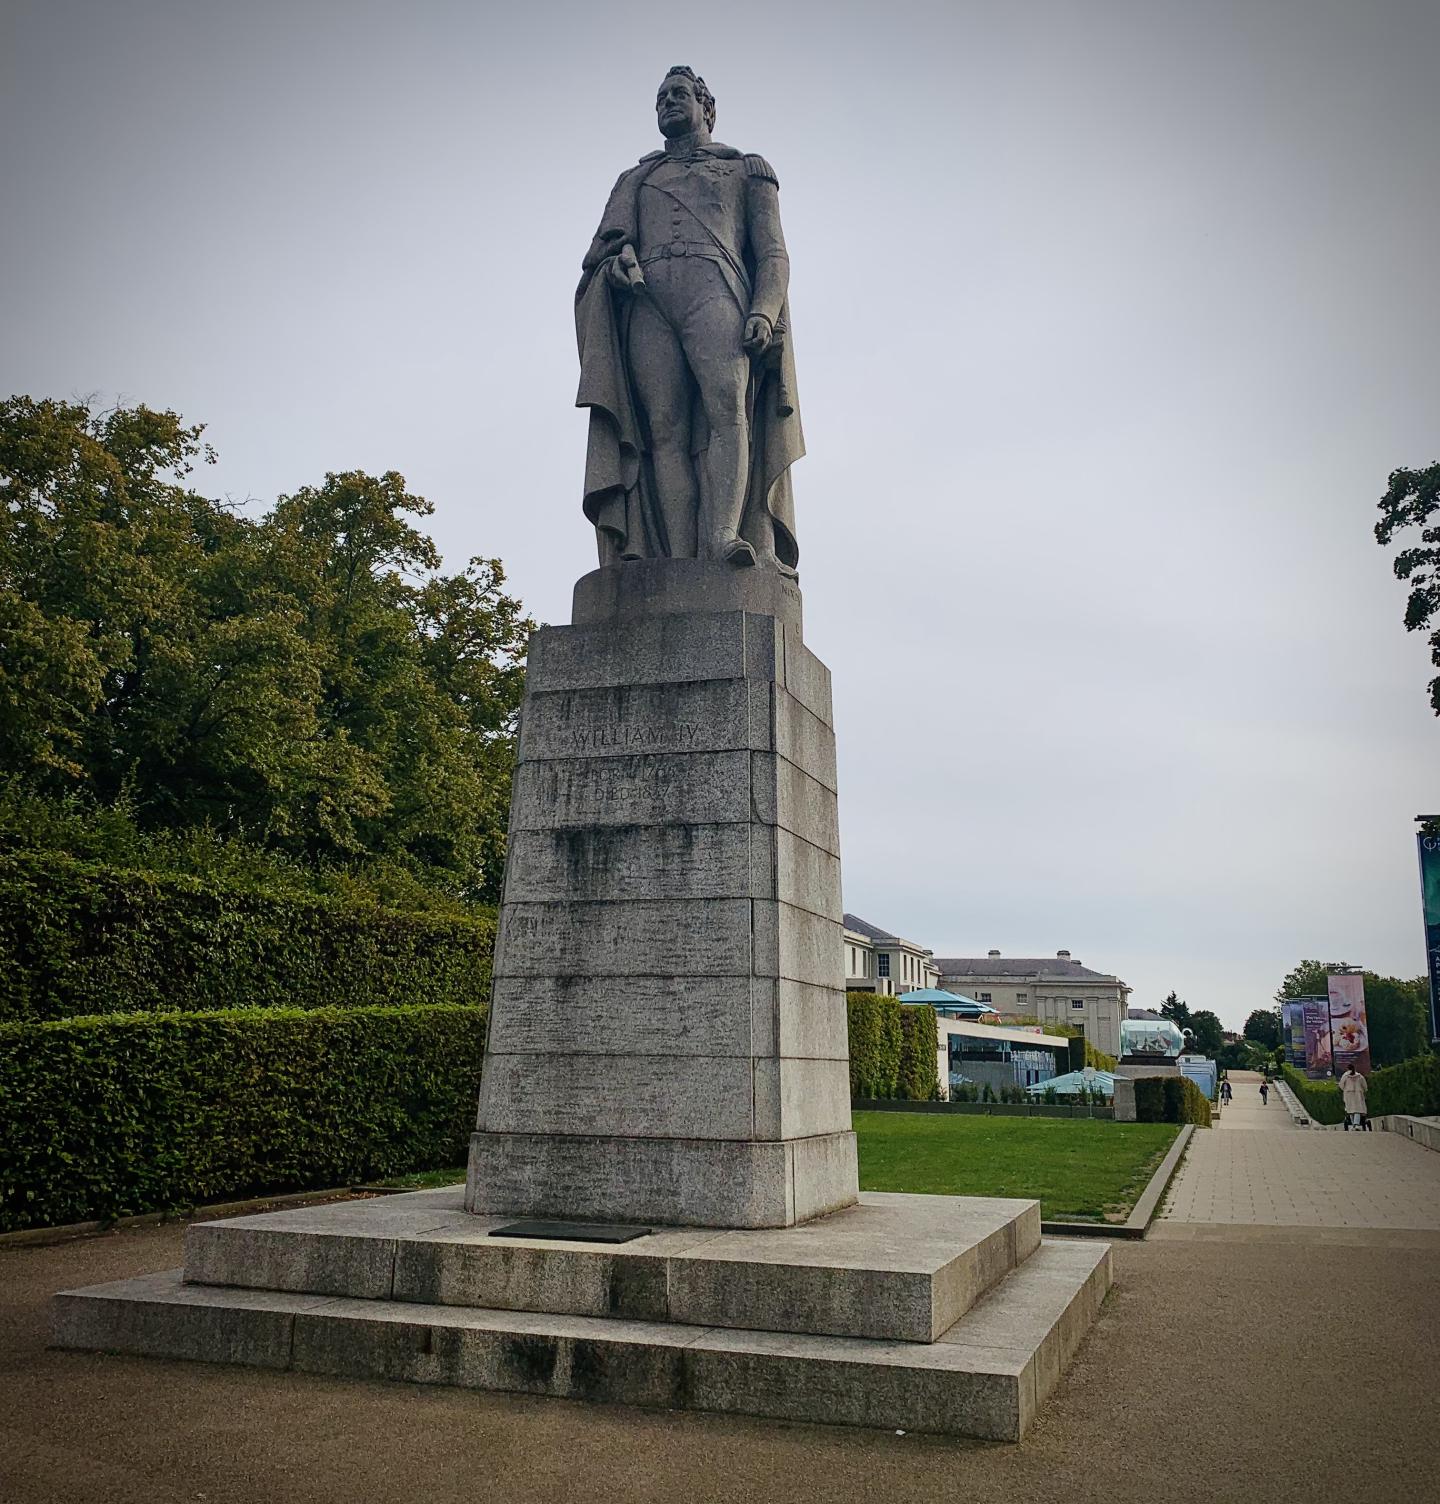 The Sailor King William IV statue